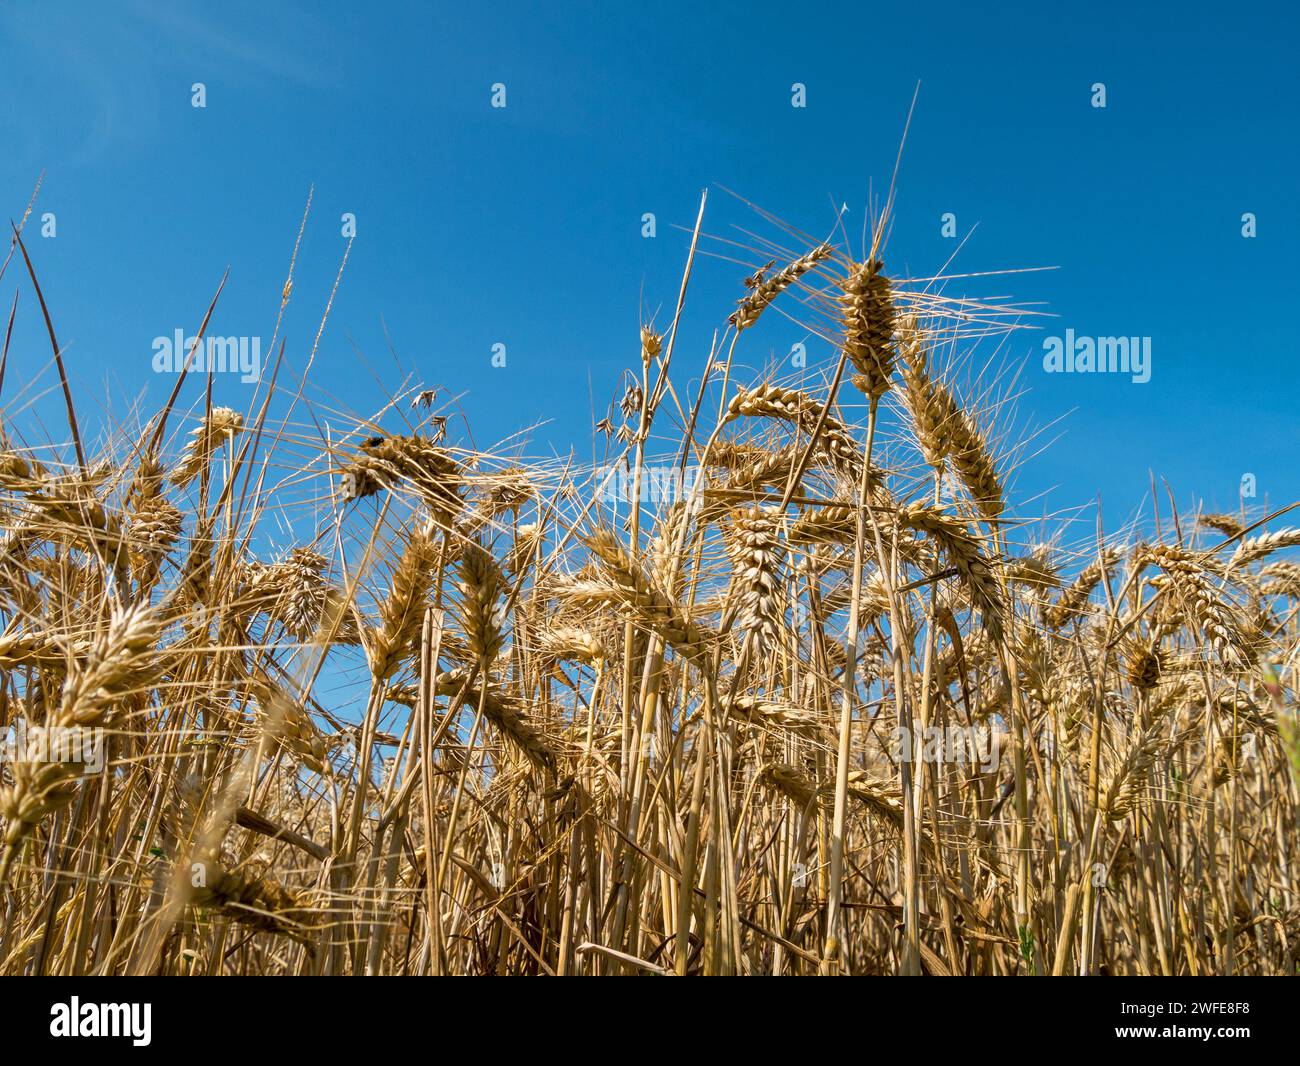 Gros plan d'épis mûrs de céréales d'orge prêtes pour la récolte contre le ciel bleu dans le champ de maïs de la ferme en août, Leicestershire, Angleterre, Royaume-Uni Banque D'Images